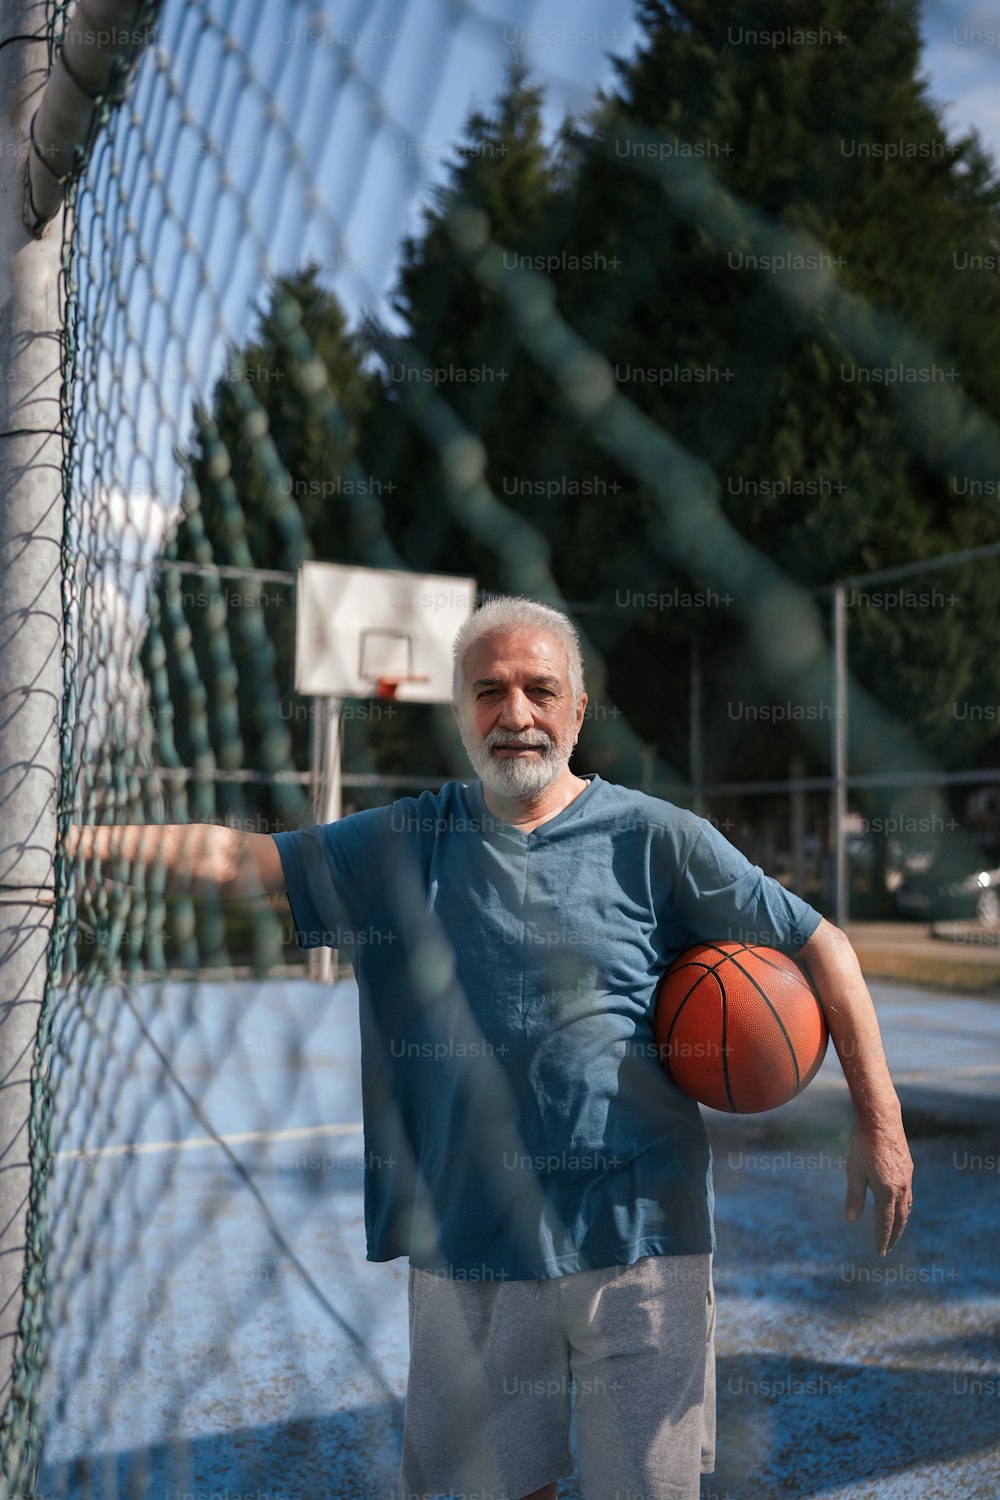 フェンスの横に立つバスケットボールを持った男